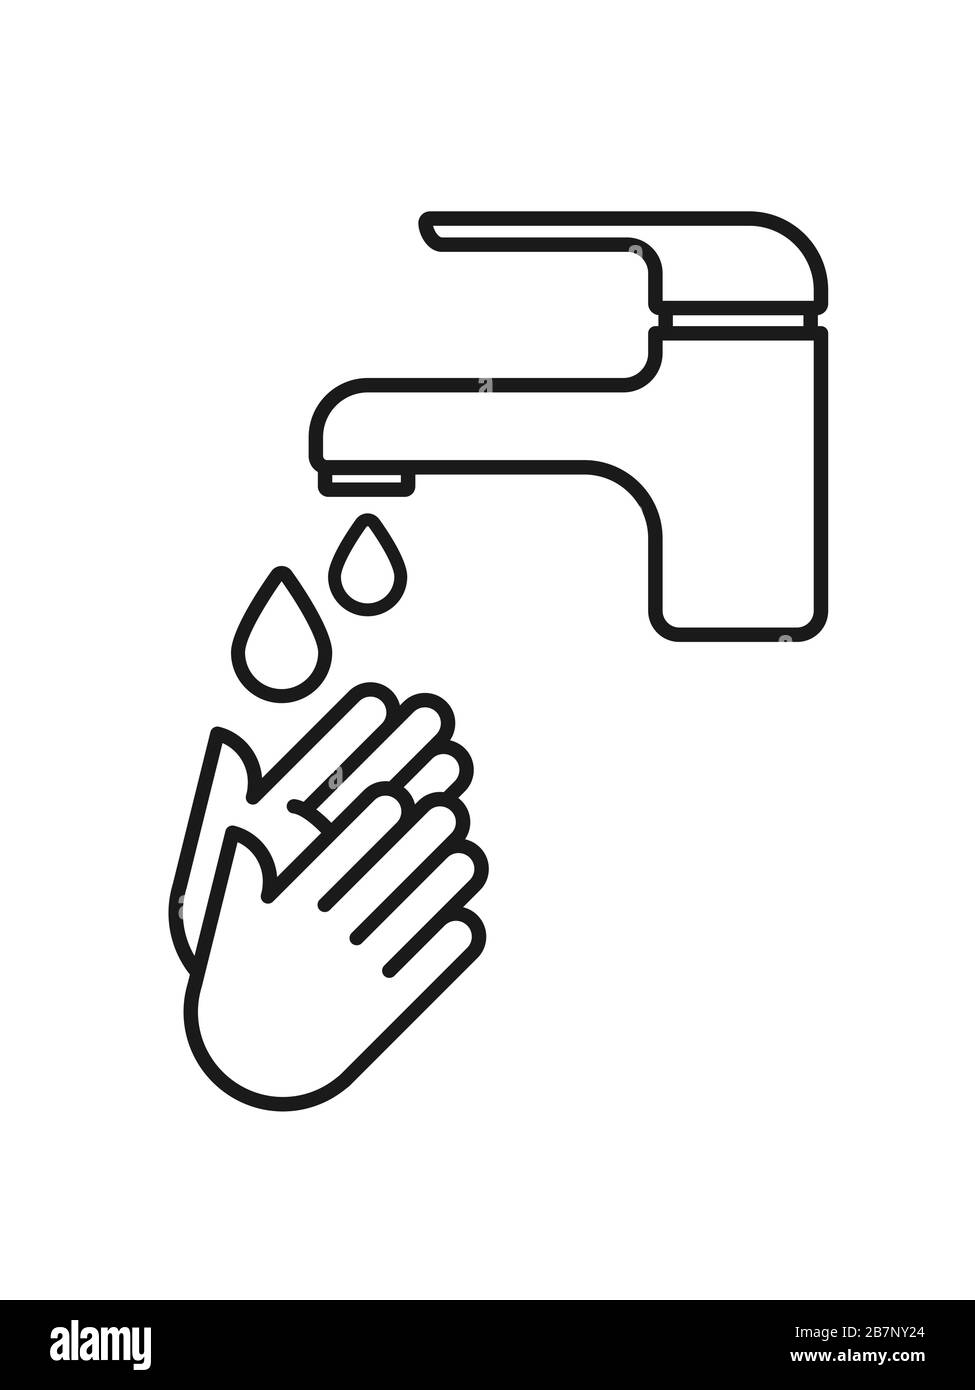 Händewaschen. Hände unter fließendem Wasser waschen. Umrisssymbol. Prävention gegen Viren, Bakterien, Grippe, Coronavirus. Konzept der Hygiene. Stock Vektor